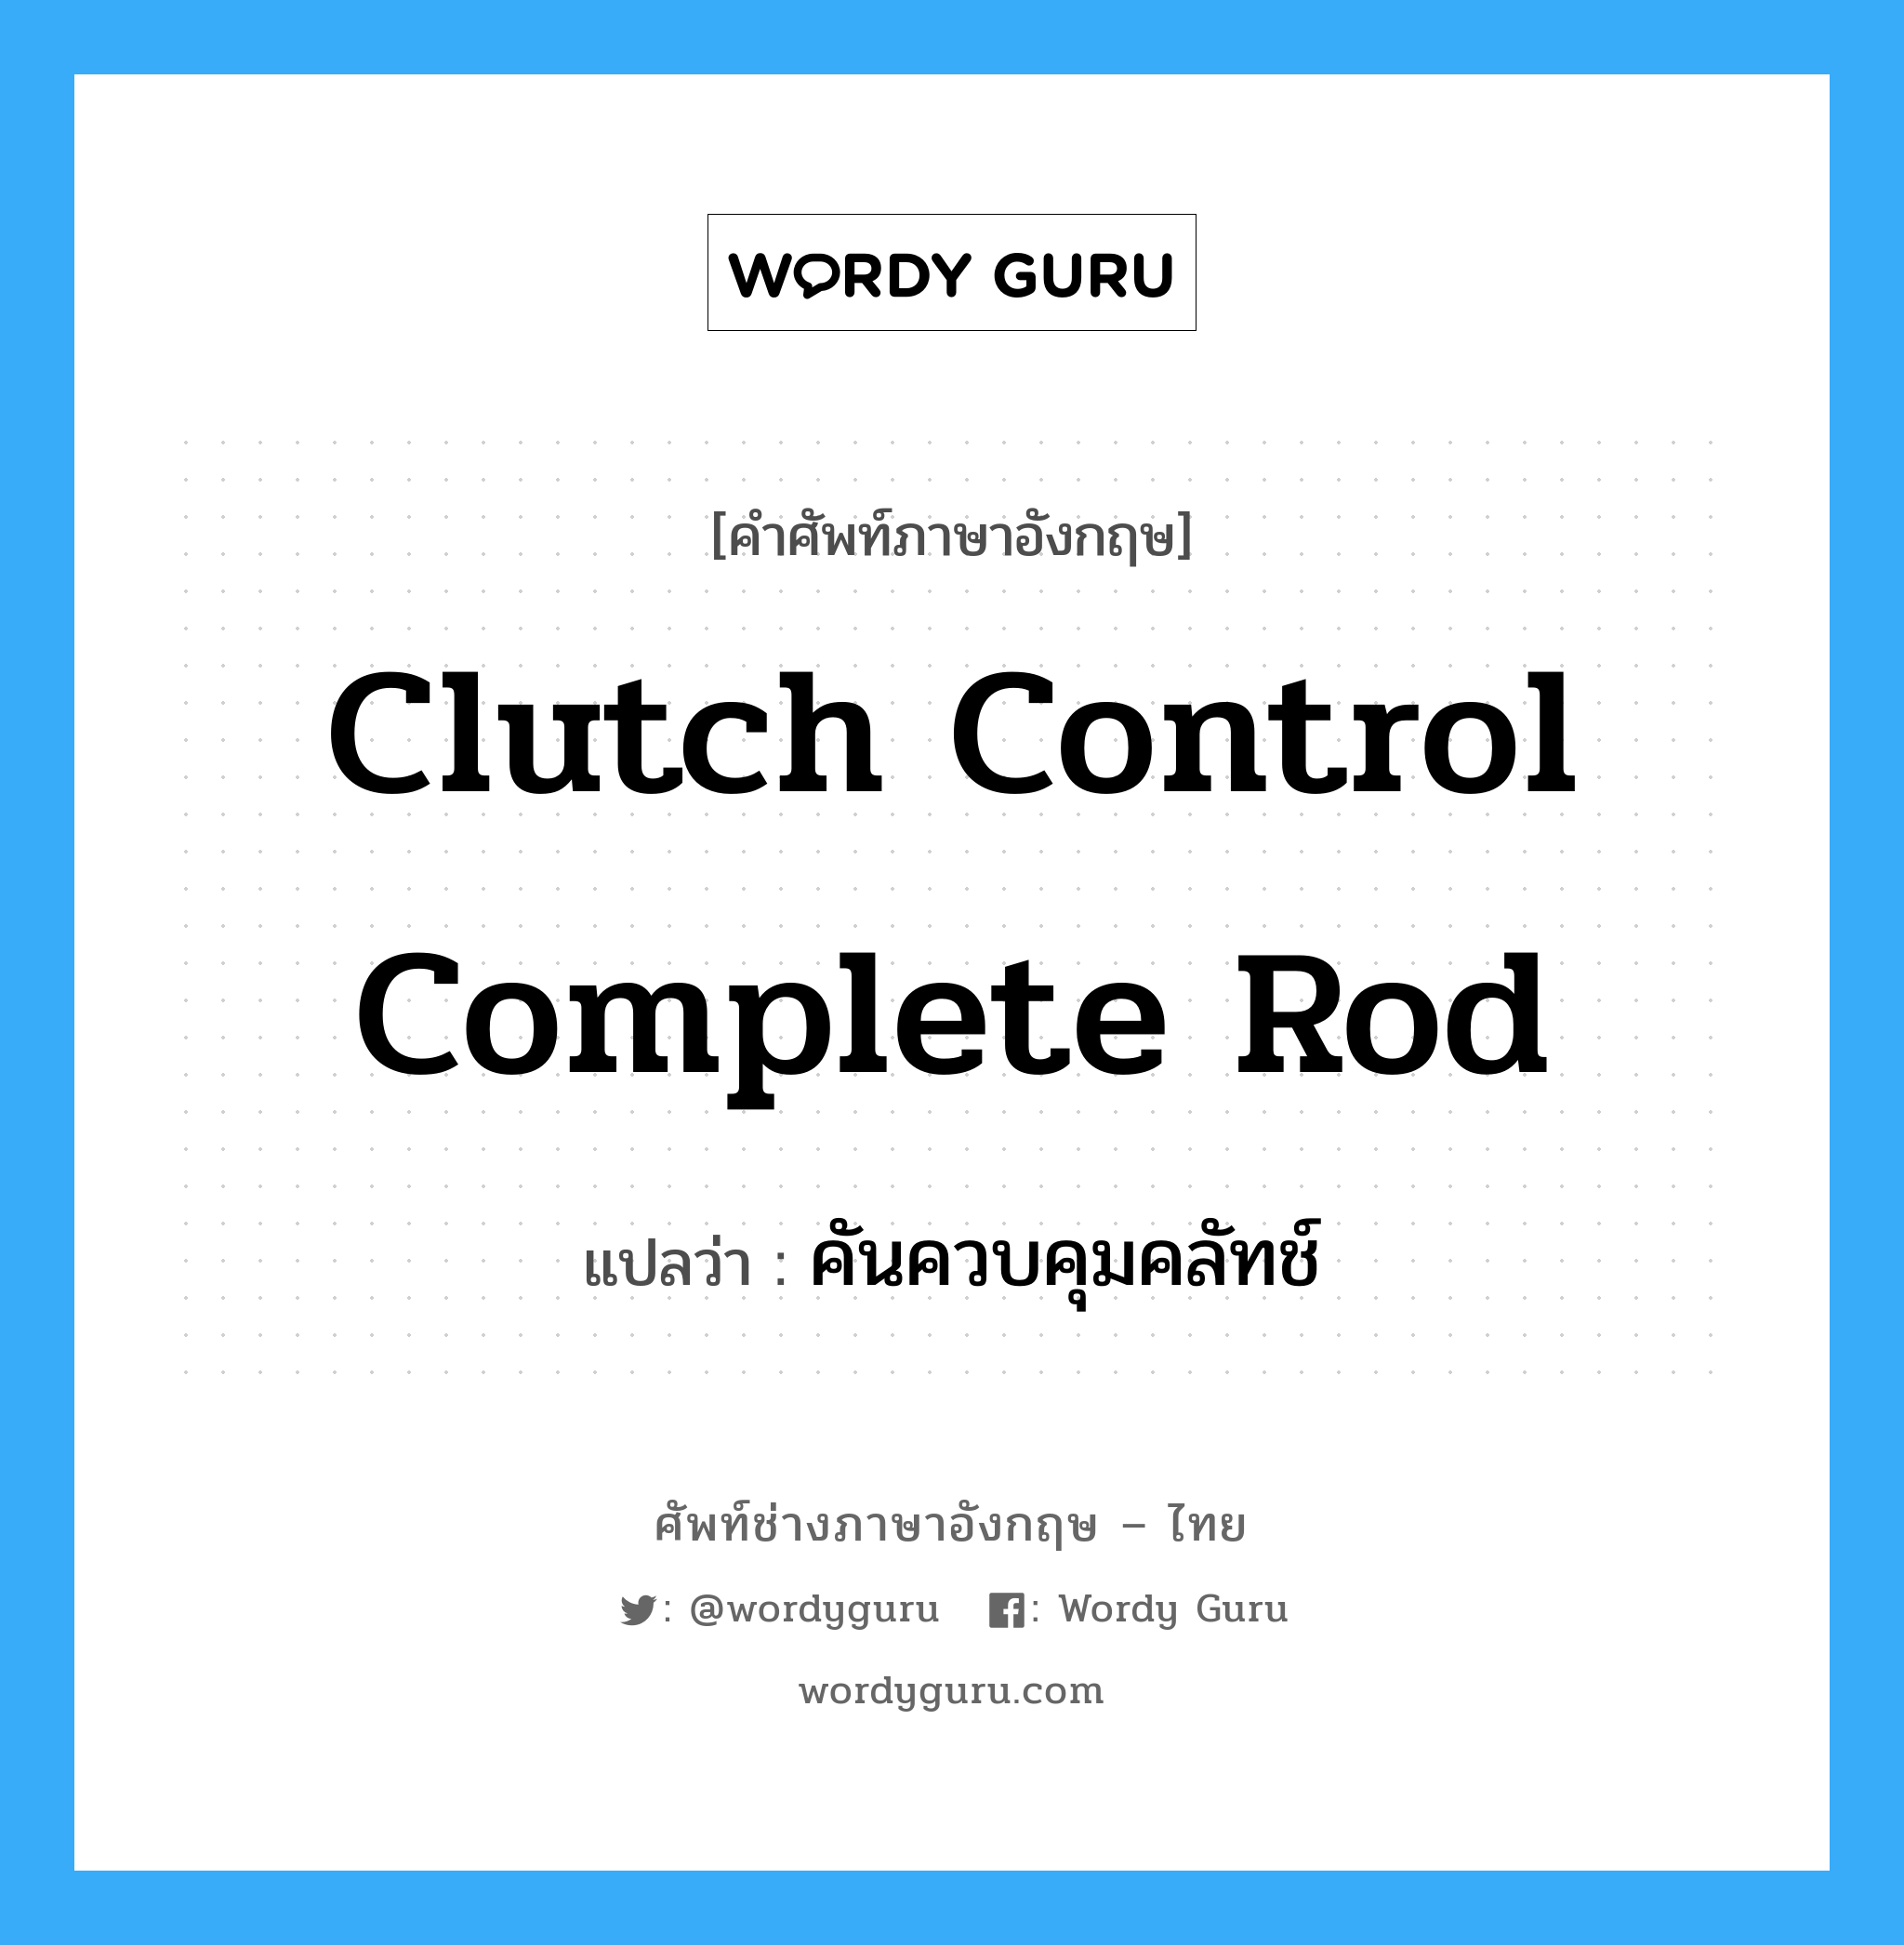 คันควบคุมคลัทช์ ภาษาอังกฤษ?, คำศัพท์ช่างภาษาอังกฤษ - ไทย คันควบคุมคลัทช์ คำศัพท์ภาษาอังกฤษ คันควบคุมคลัทช์ แปลว่า clutch control complete rod